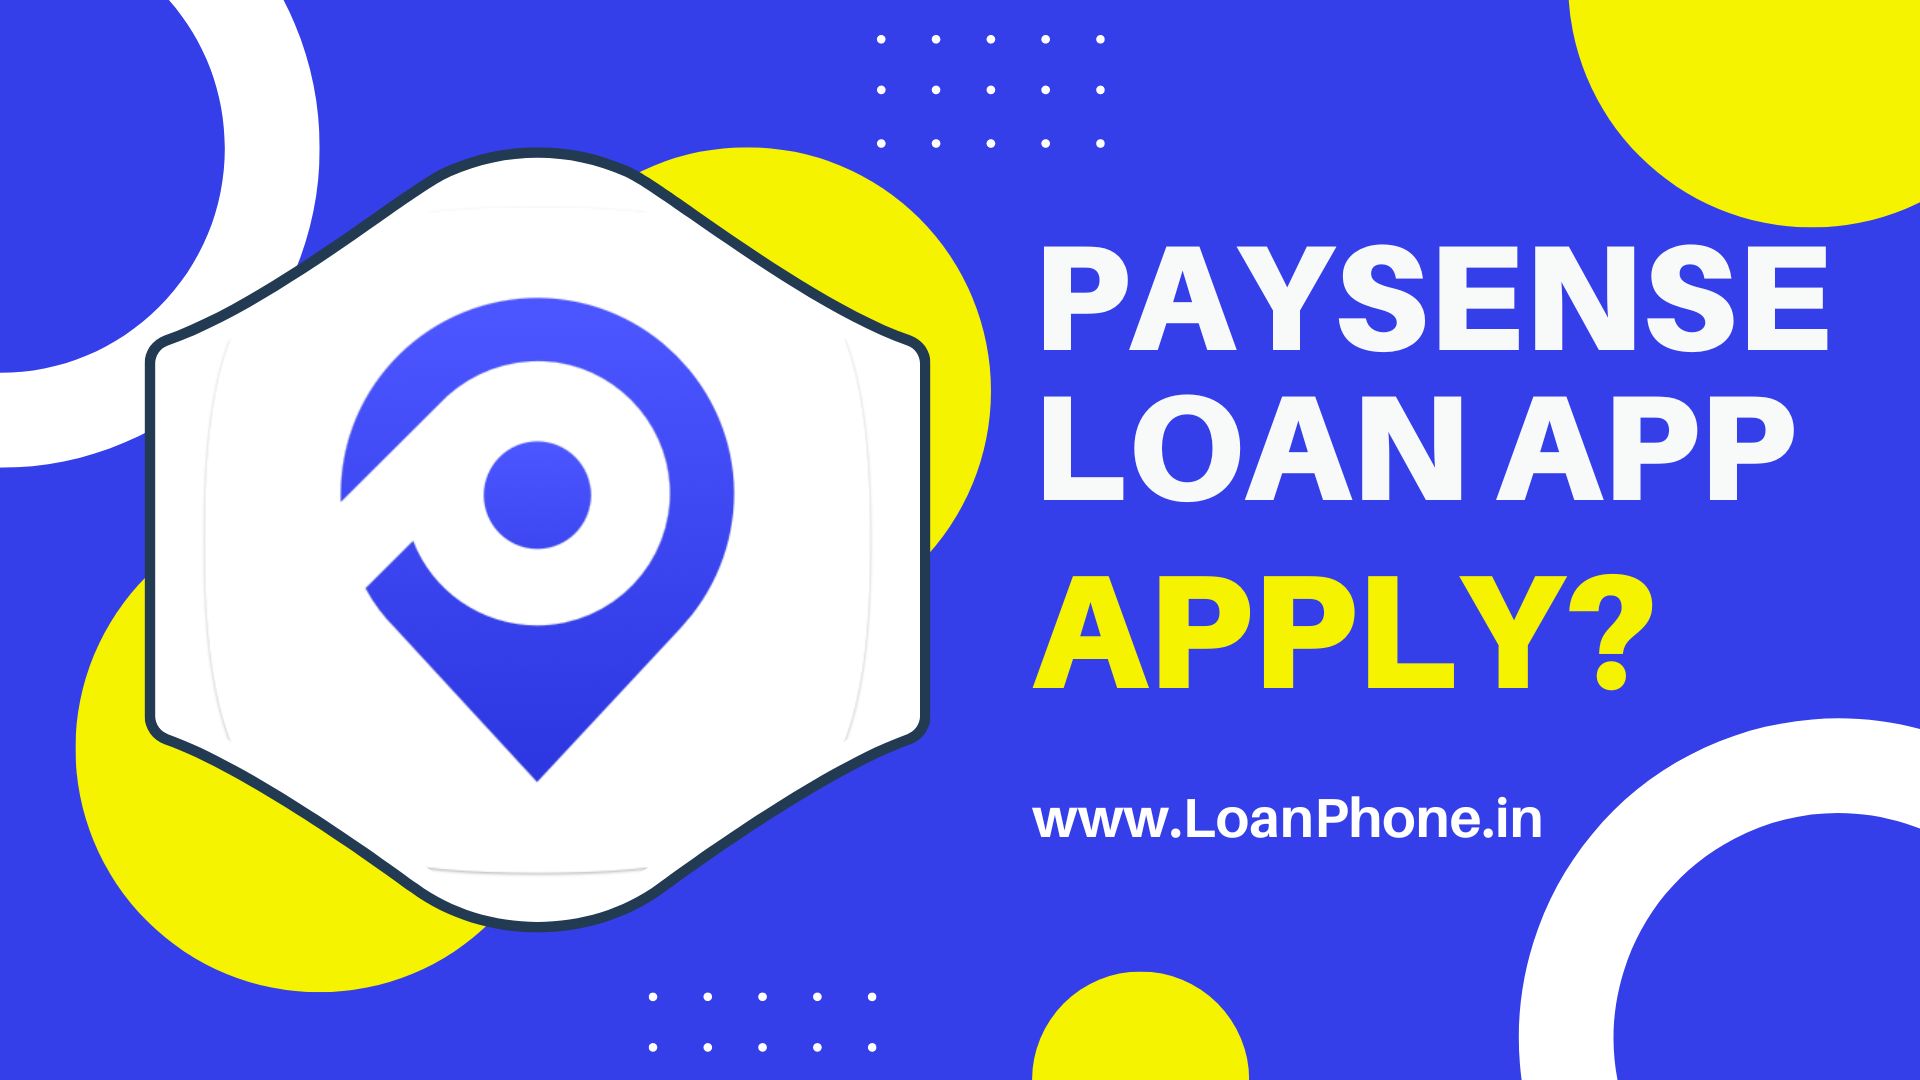 PaySense Loan App से लोन कैसे लें?